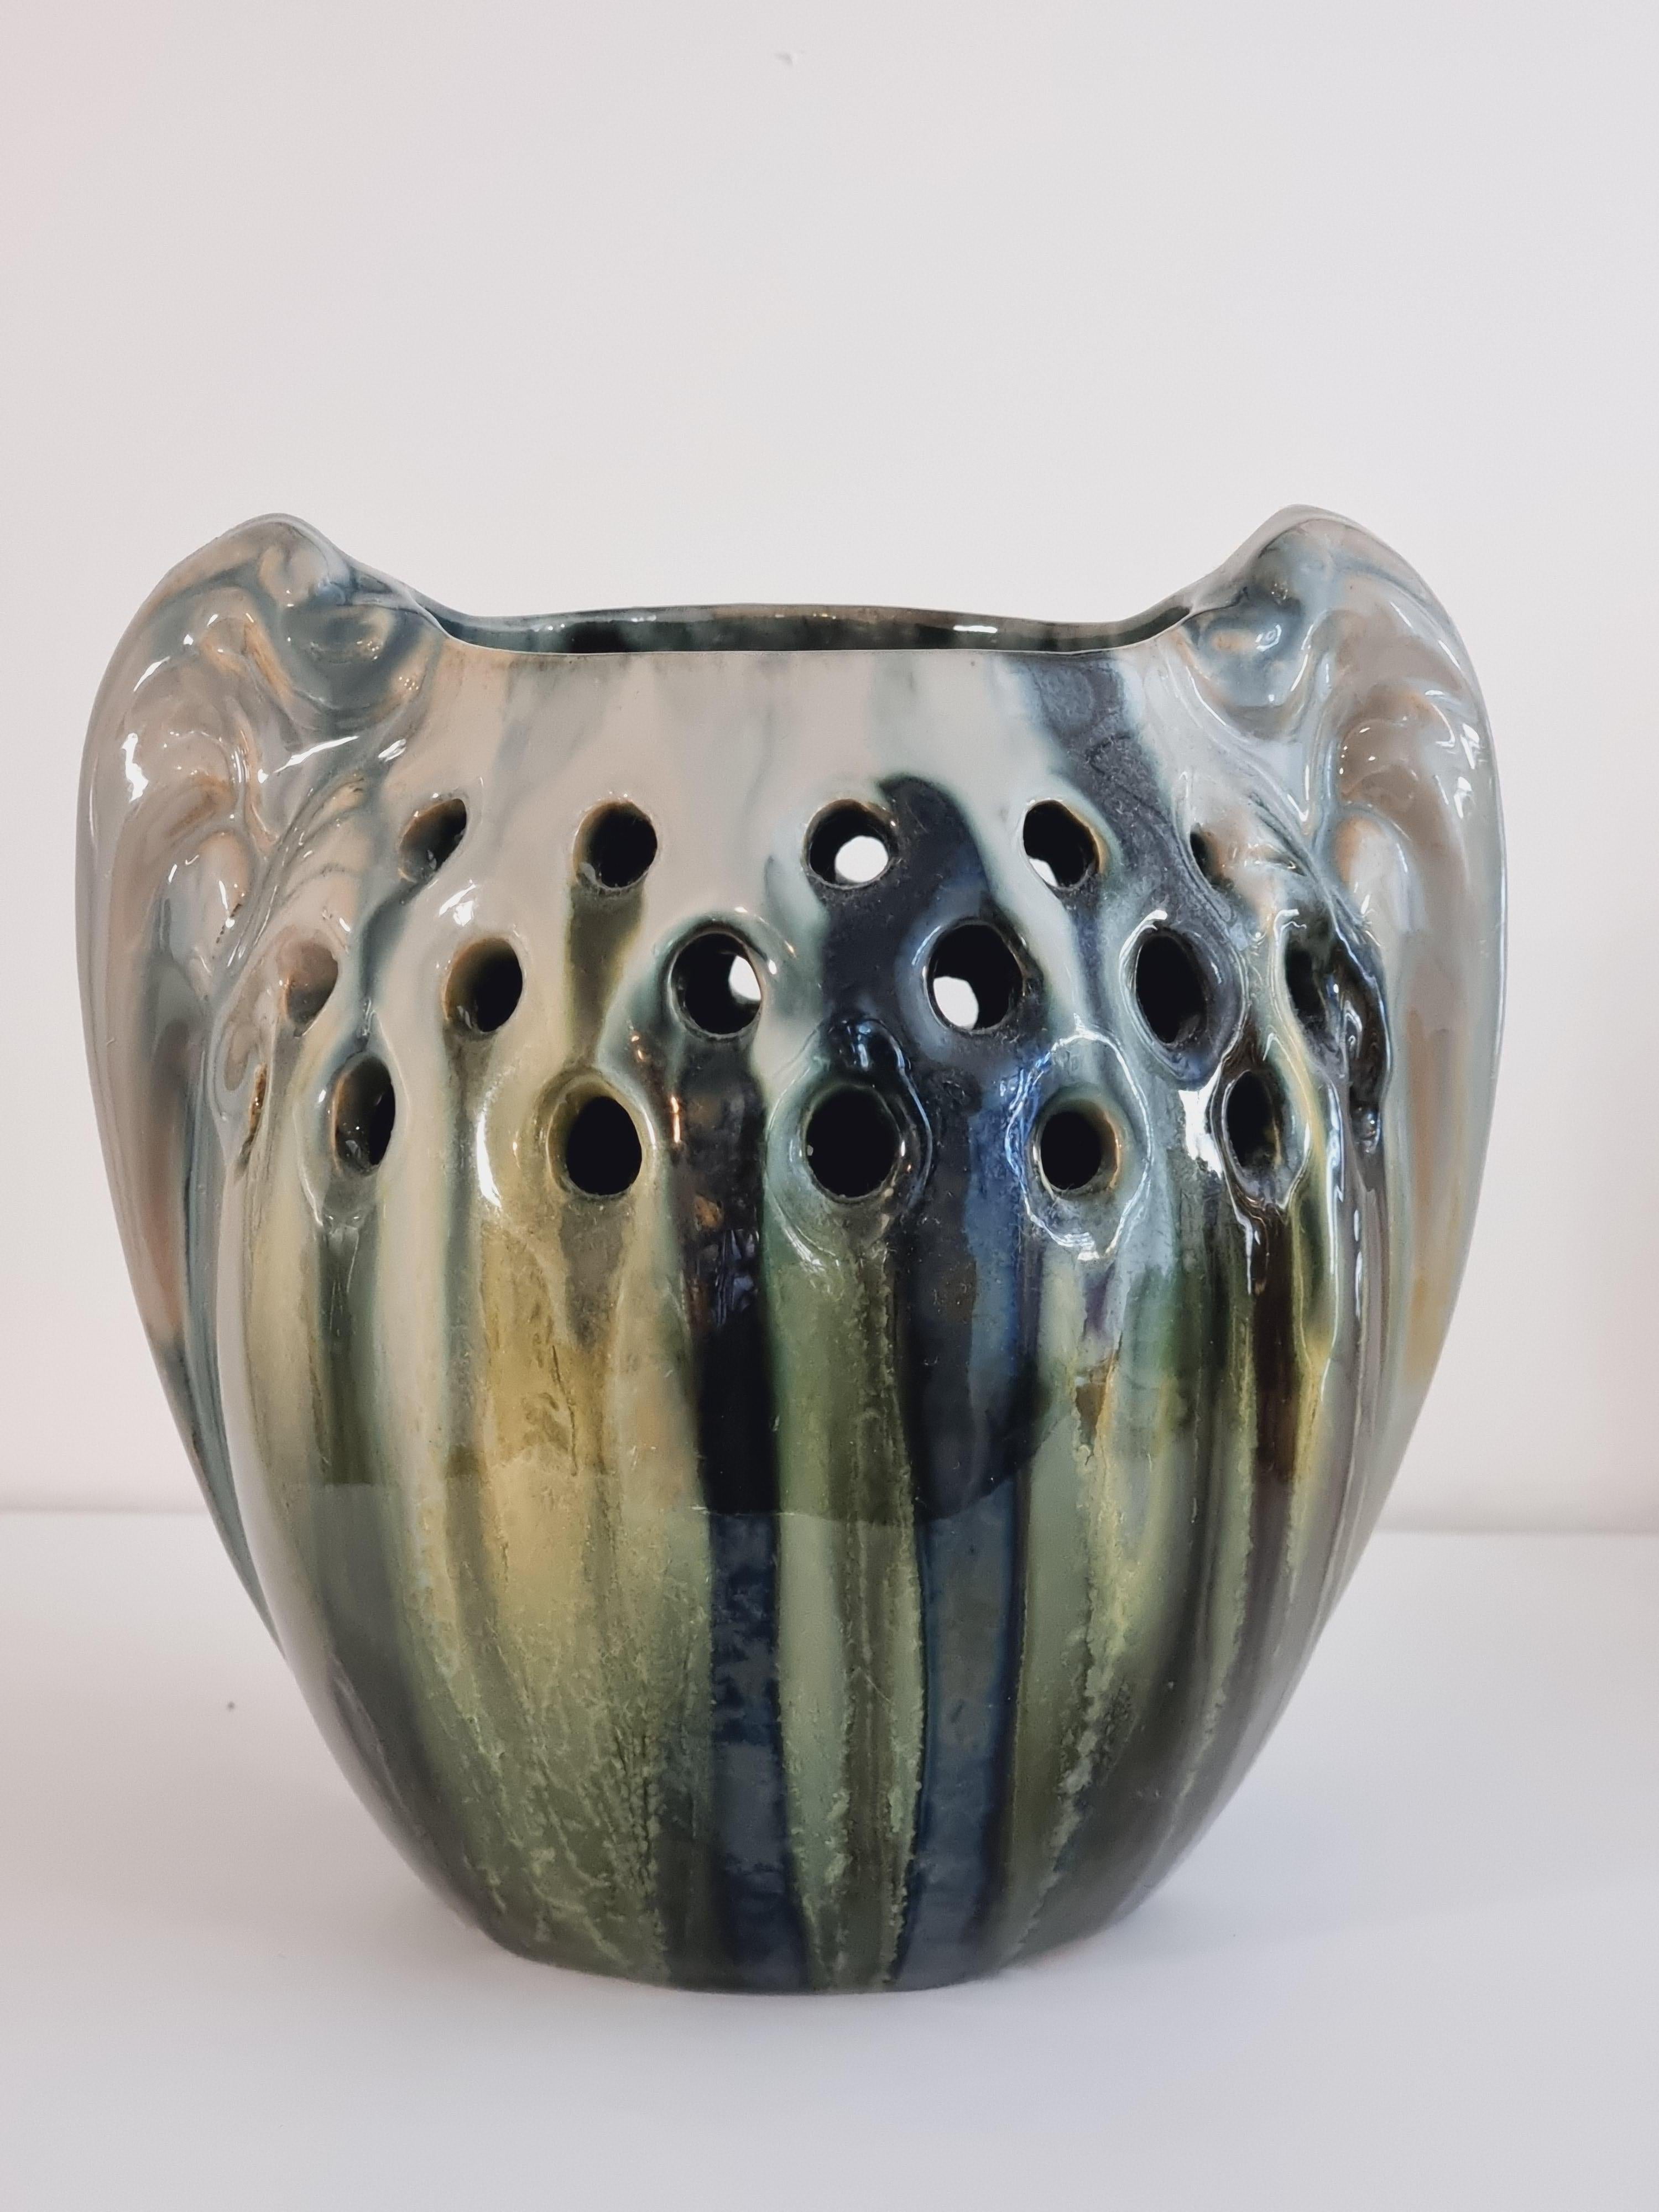 Rare vase décoratif de Michael Andersen & Son (MA&S) avec une belle glaçure de différentes couleurs (jaune, vert, gris..) qui coule le long de la forme arrondie. 

La partie supérieure a des formes décoratives de perforations/trous et les côtés ont